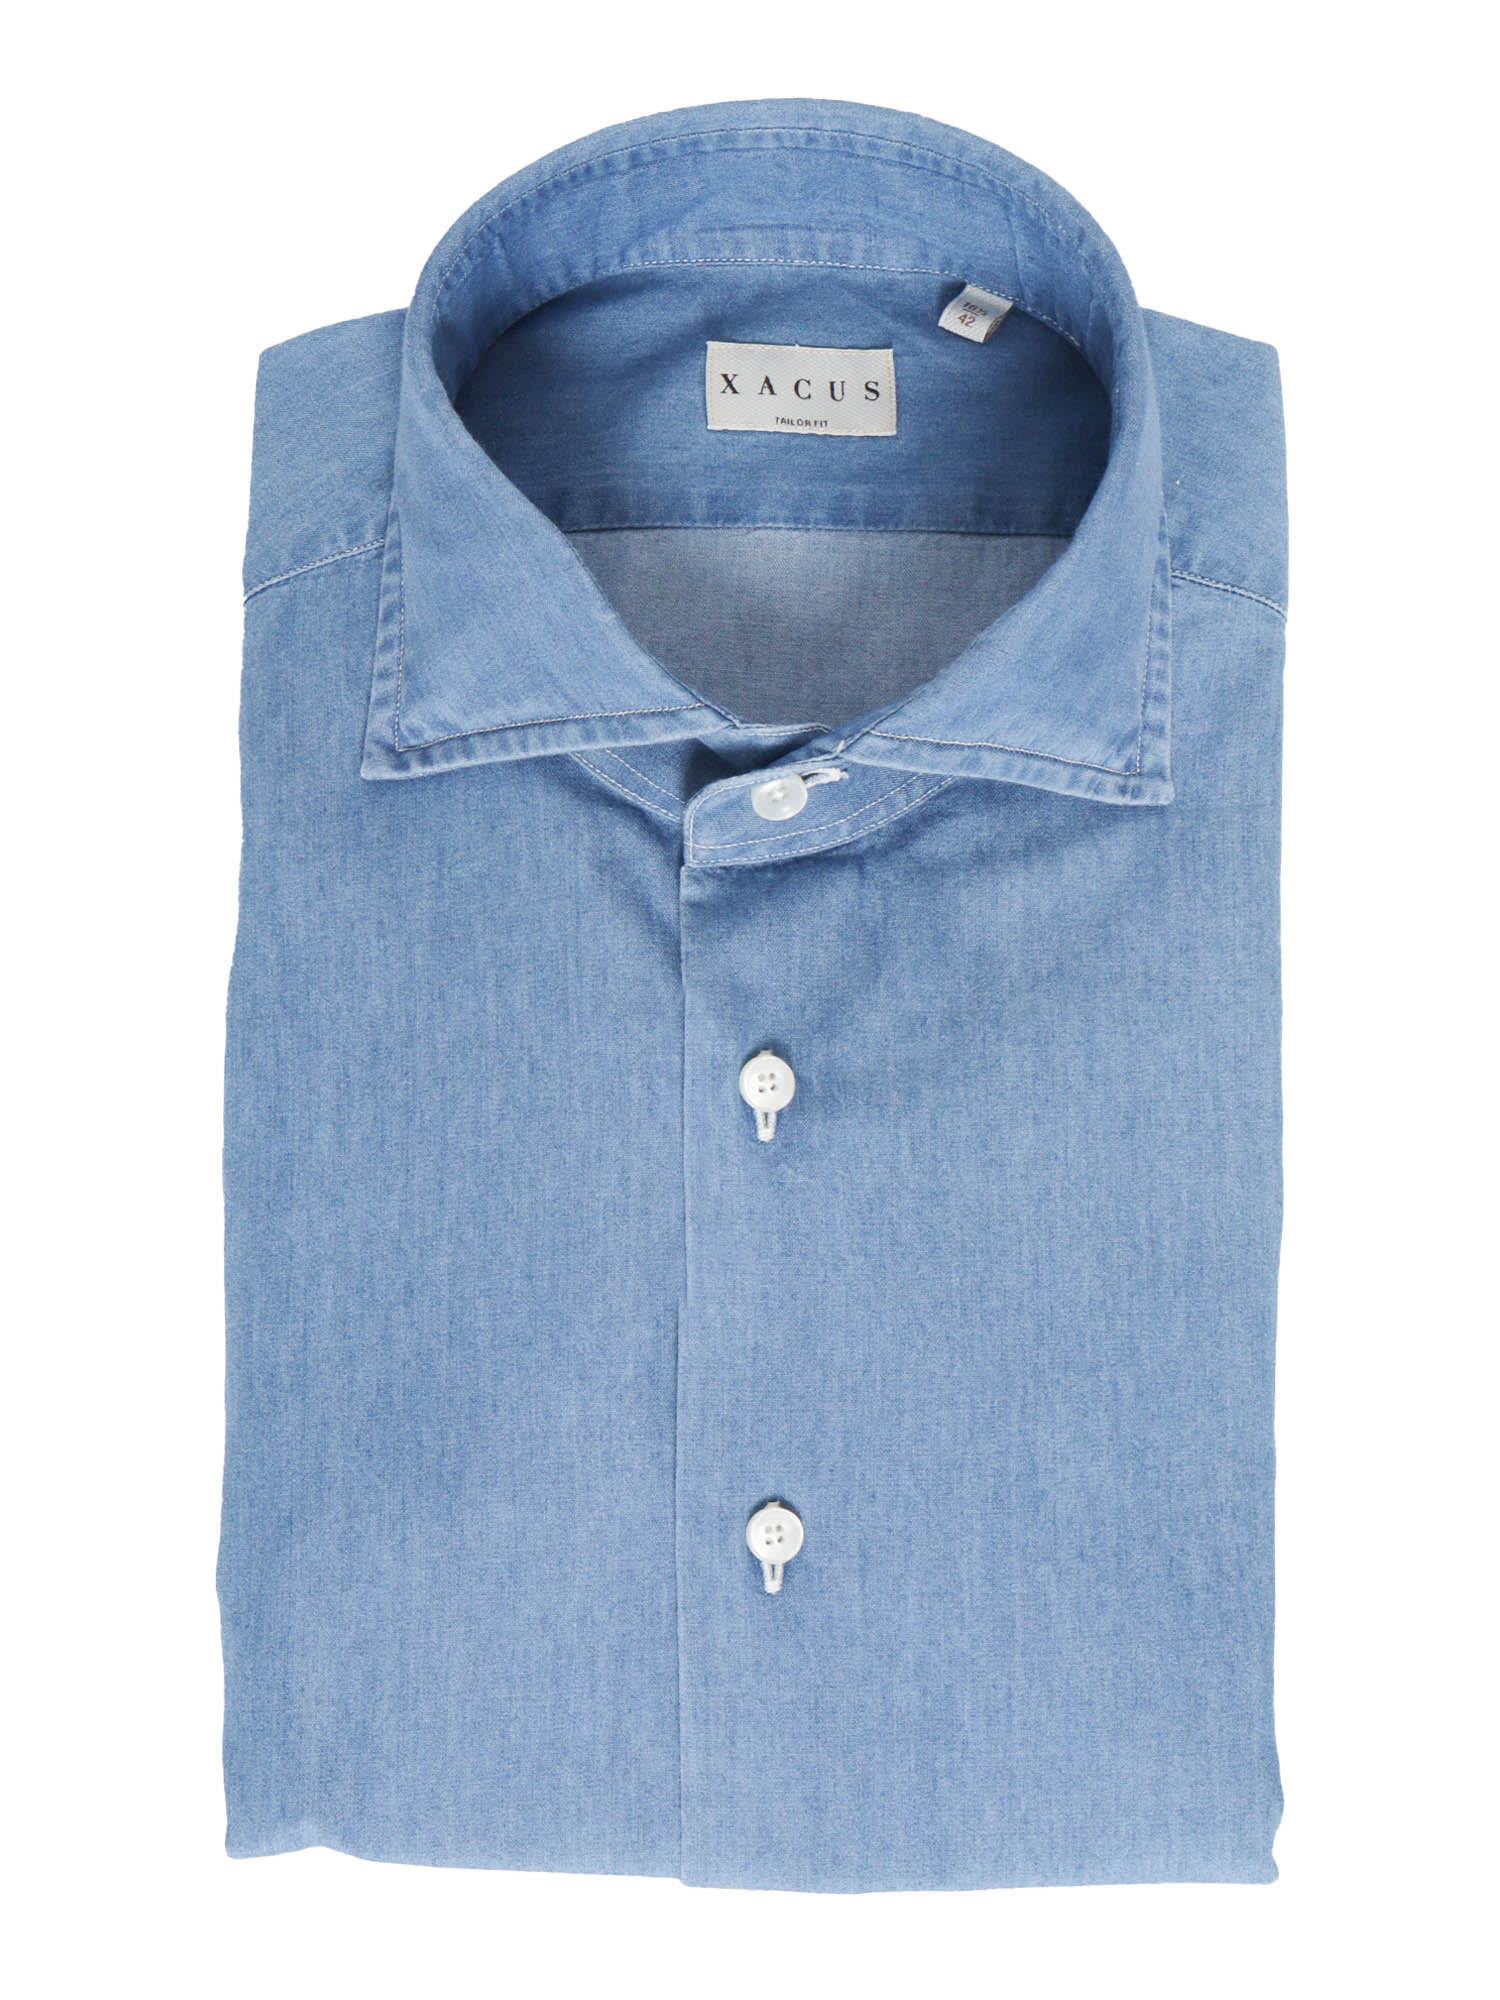 Shop Xacus Light Blue Cotton Shirt